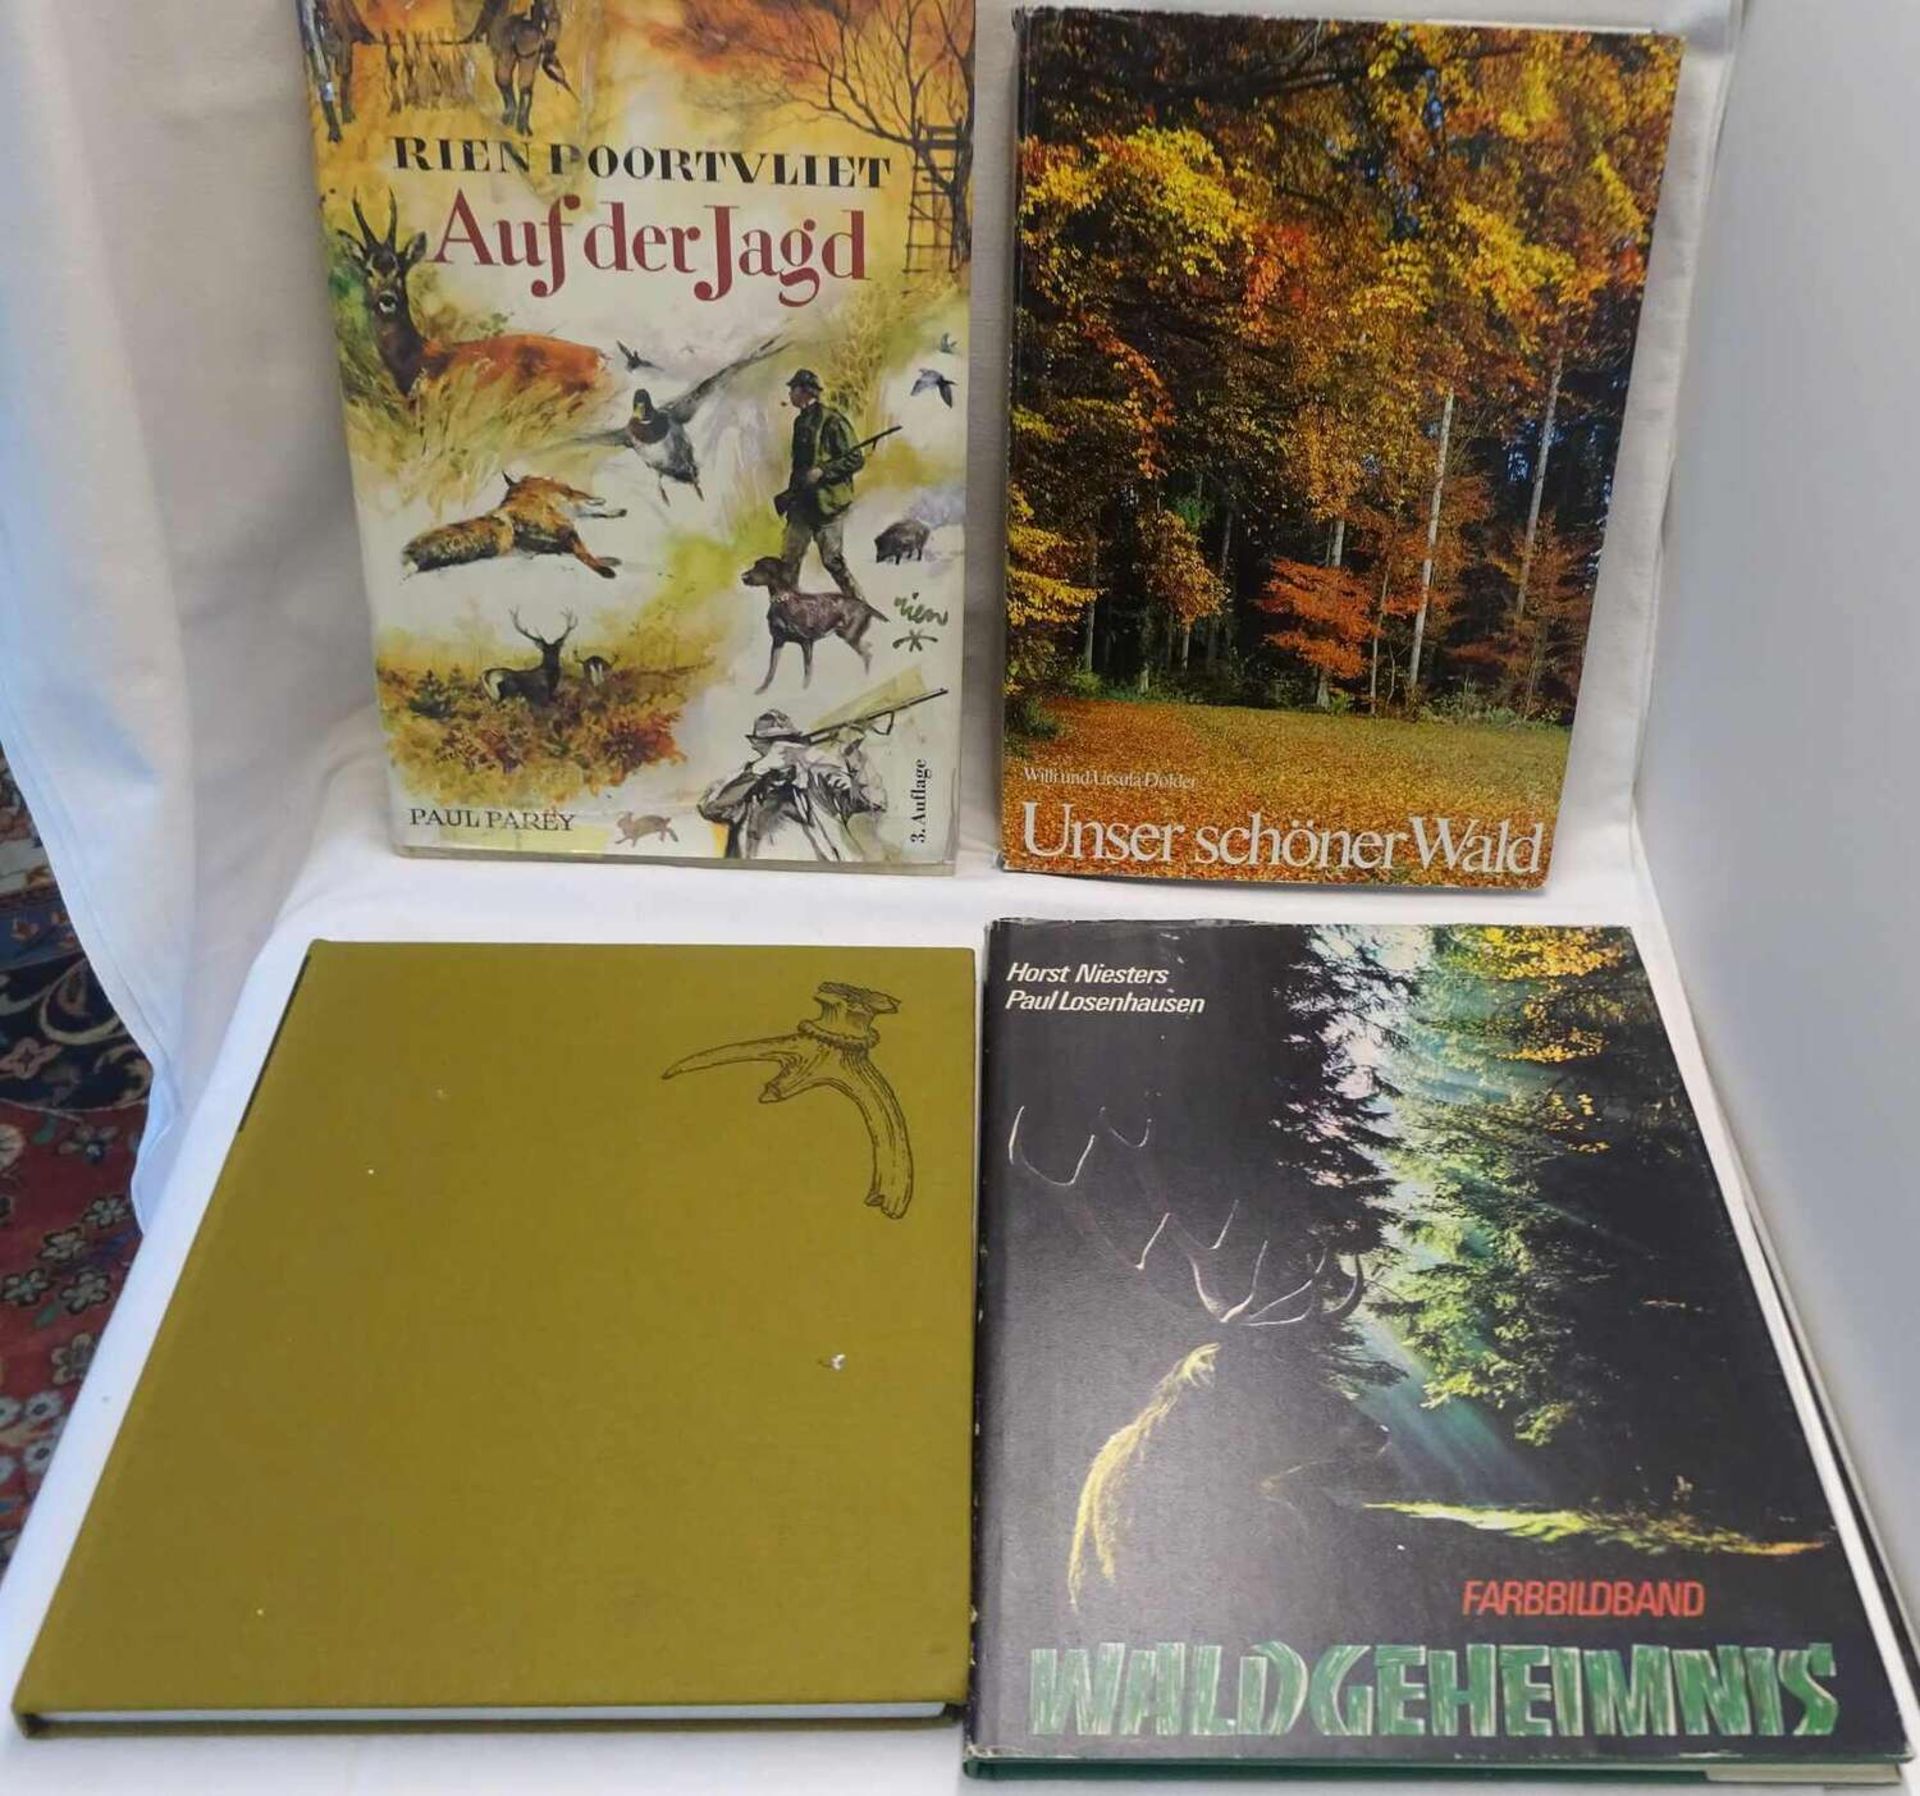 4 Bücher zum Thema Jagd, dabei "Auf der Jagd", "Unser schöner Wald", "Waldgeheimnis", "Begegnung